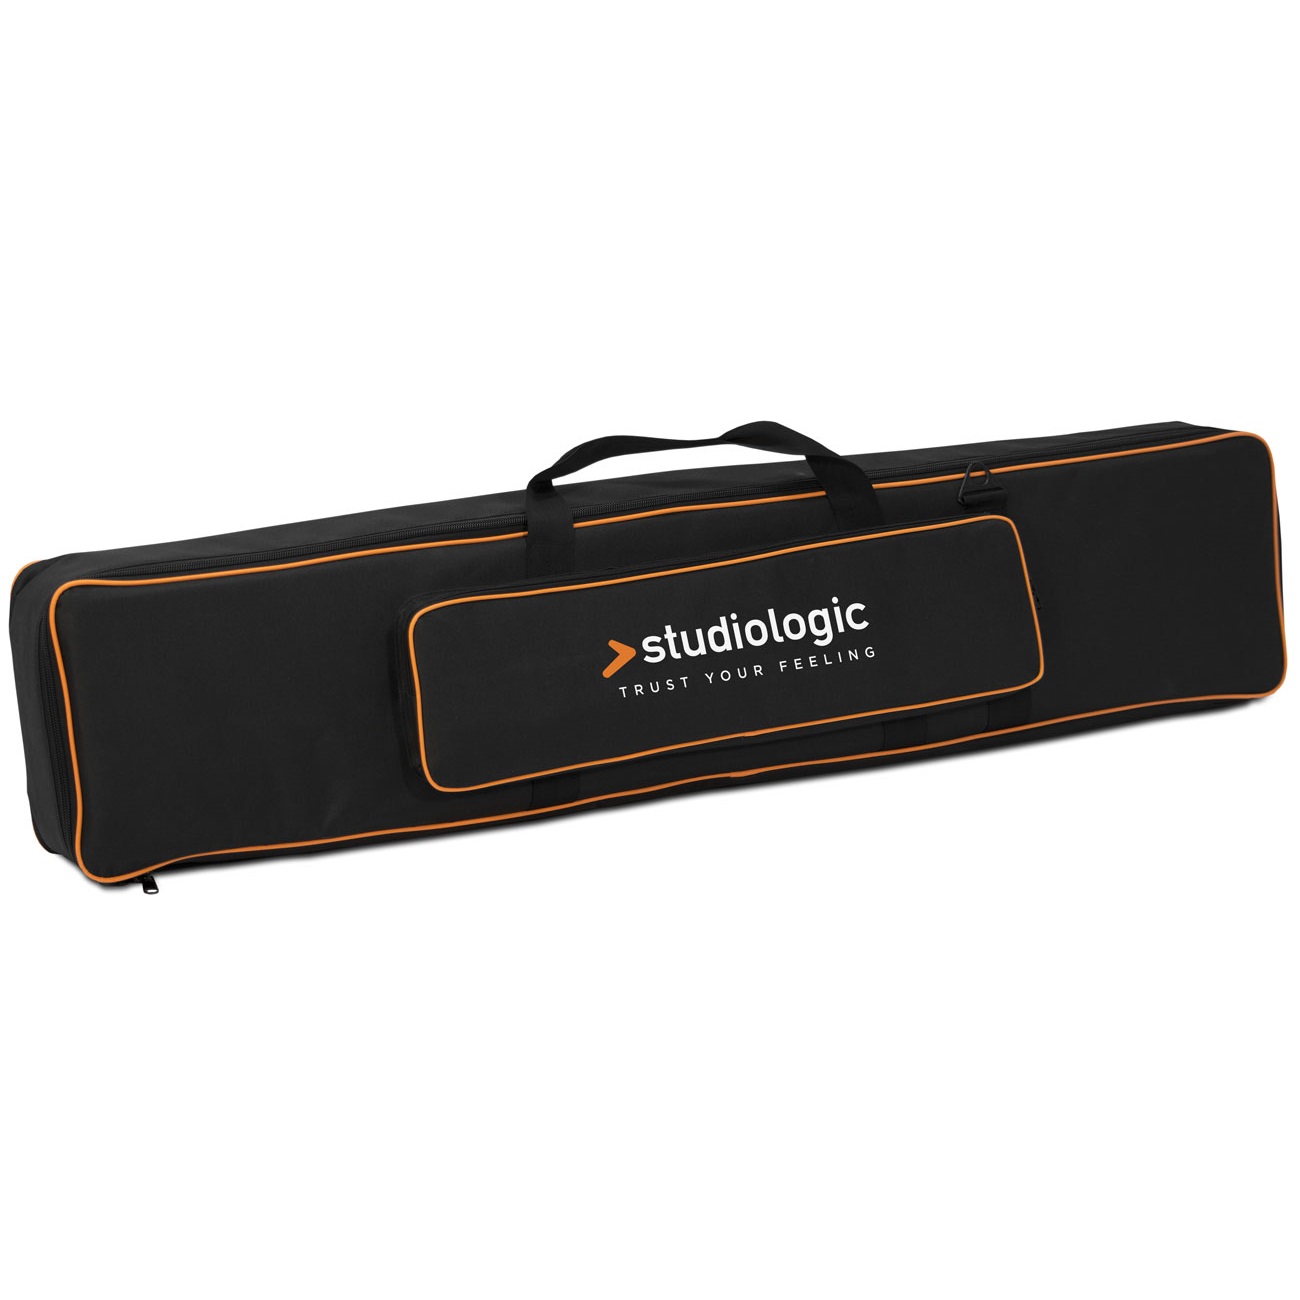 Чехлы и кейсы для клавишных Studiologic Soft Case Size B чехлы и кейсы для клавишных rockbag rb21642b